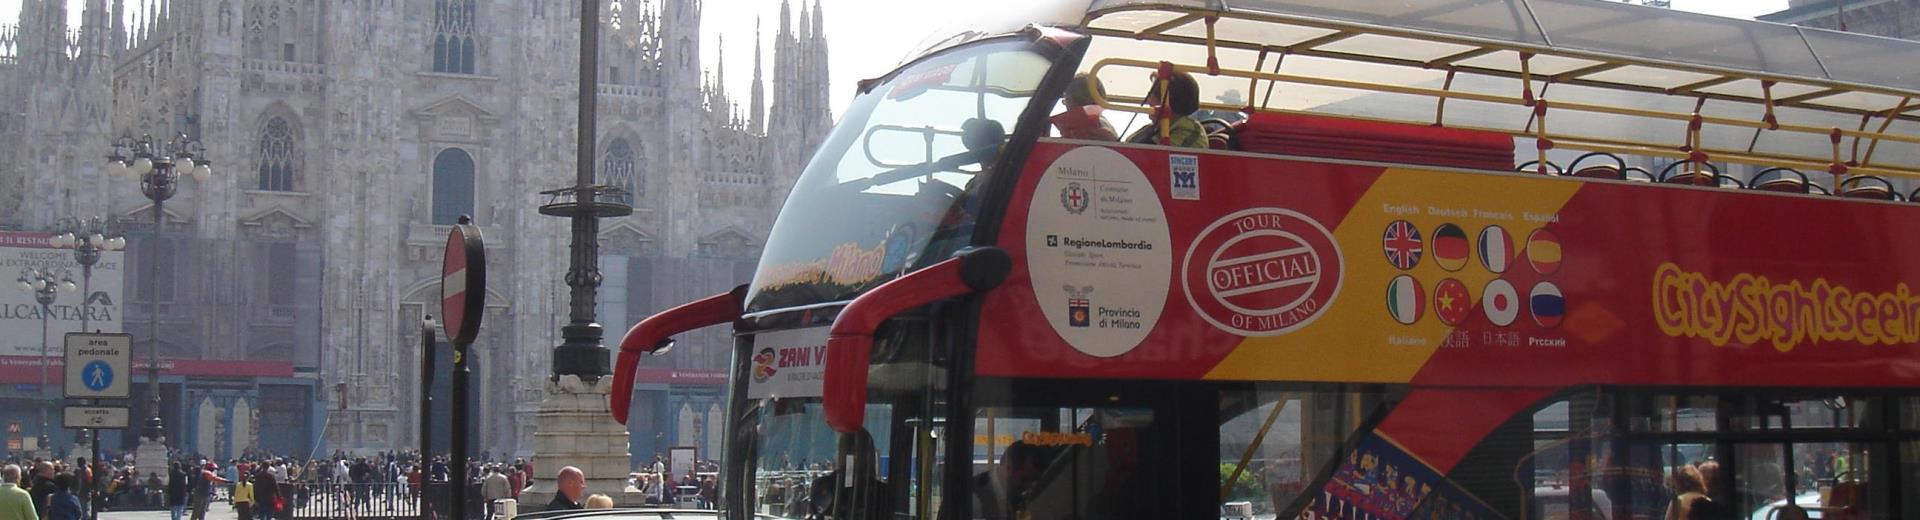 Panoramic bus in Piazza Duomo